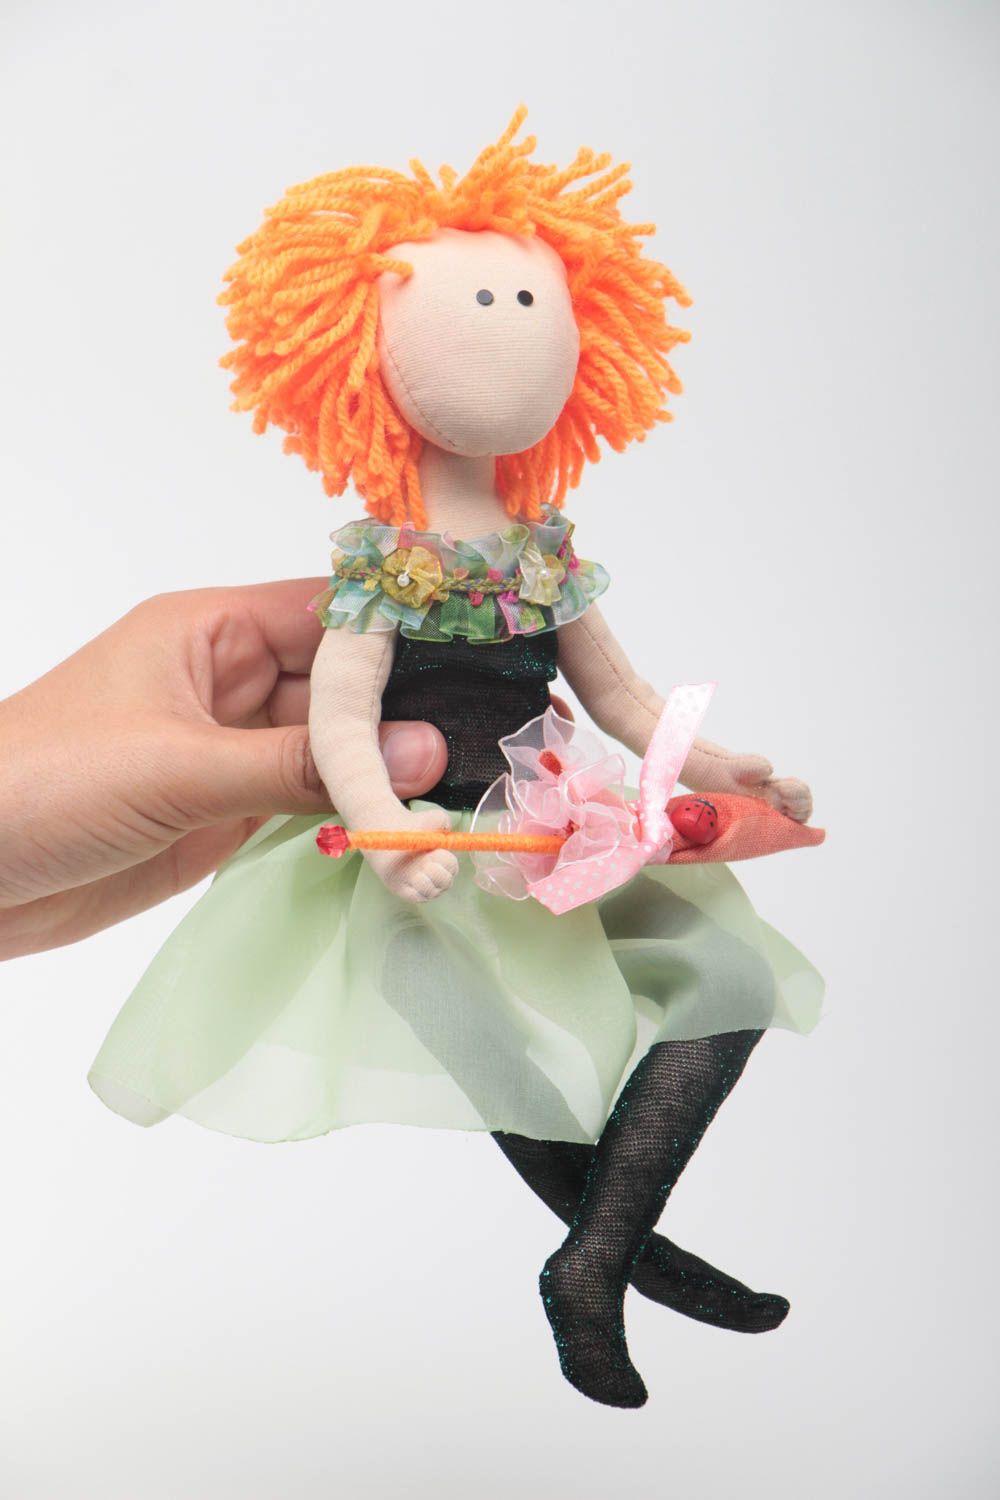 Handmade doll designer toy for children unusual doll for girls nursery decor photo 5